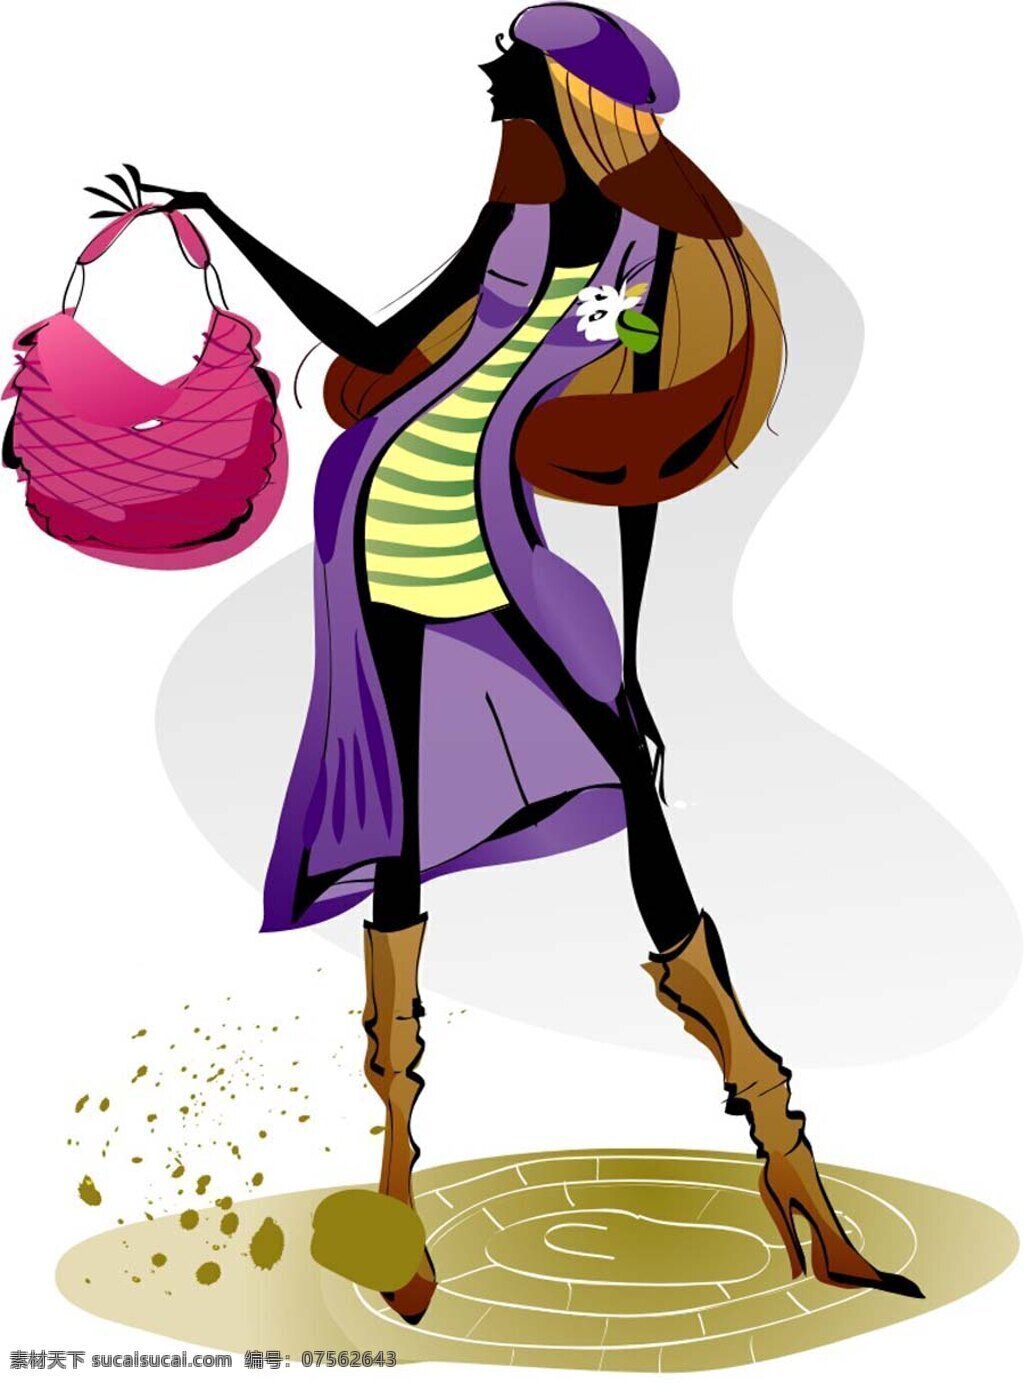 印花 矢量图 服装图案 人物 少女 手袋 印花矢量图 紫色 面料图库 服装设计 图案花型